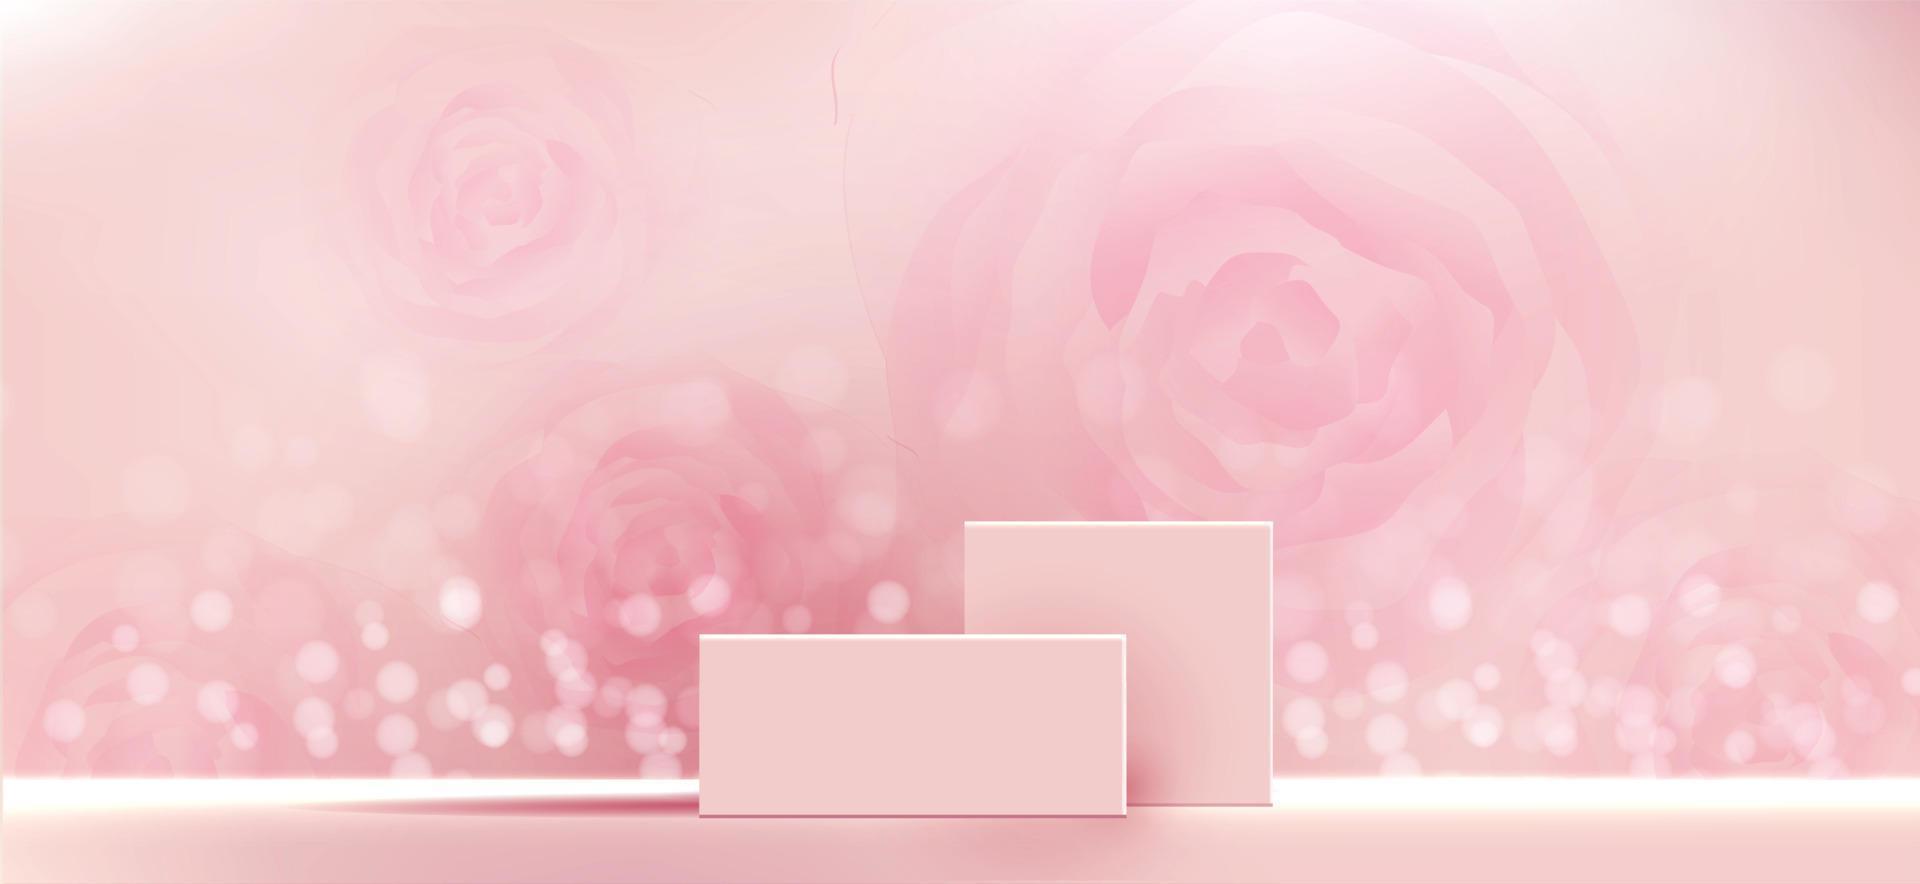 arrière-plan cosmétique pour la présentation du produit, de la marque et de l'emballage. la géométrie forme un moulage carré sur la scène du podium avec une ombre de fond de particules de paillettes roses. conception de vecteur. vecteur